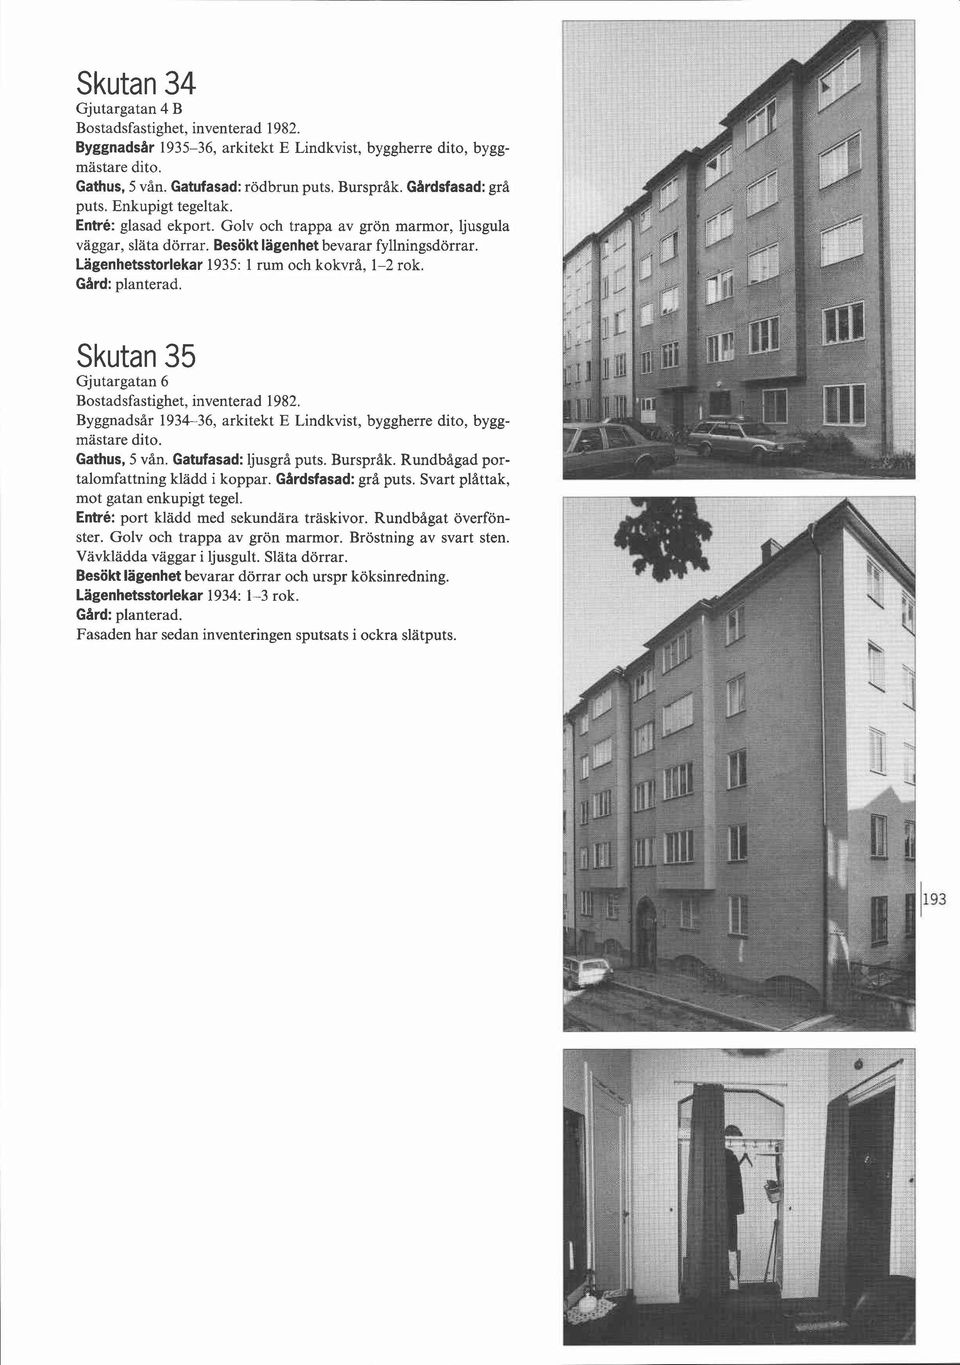 Skutan 35 Gjutargatan 6 Byggnadsår 1934-36, arkitekt E Lindkvist, byggherre dito, byggmästare dito. Gathus, 5 vån. Gatufasad: ljusgrå puts. Burspråk. Rundbågad portalomfattning klädd i koppar.